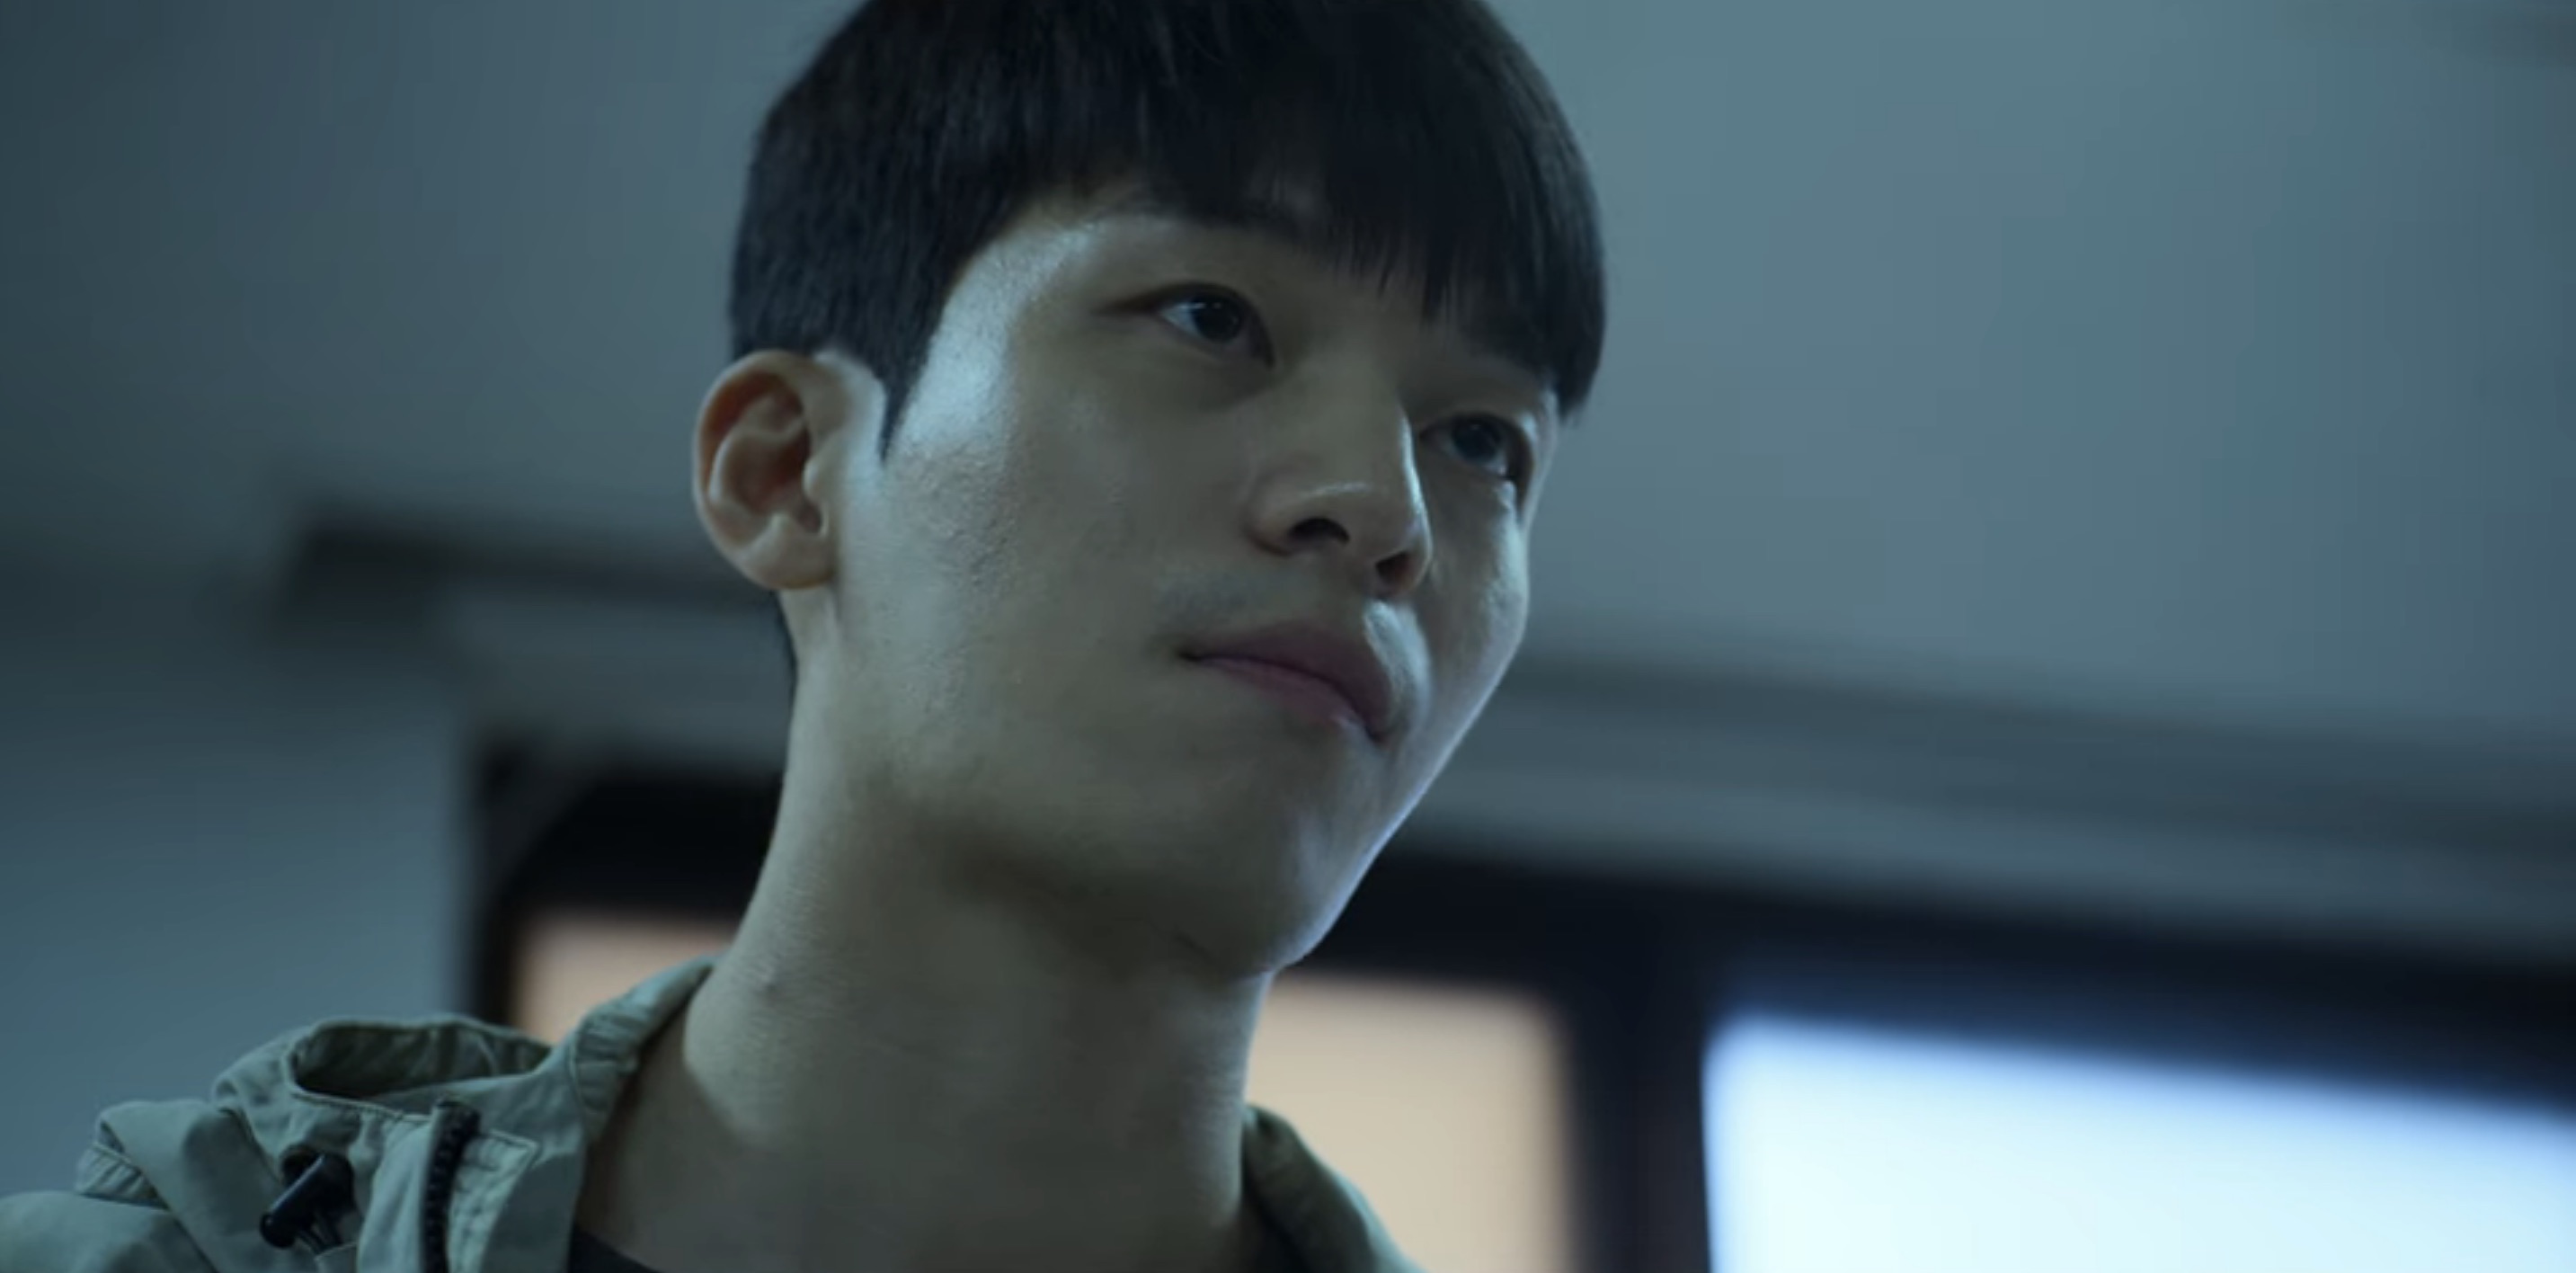 Squid Game Cast - Wi Ha-joon as Hwang Jun-ho